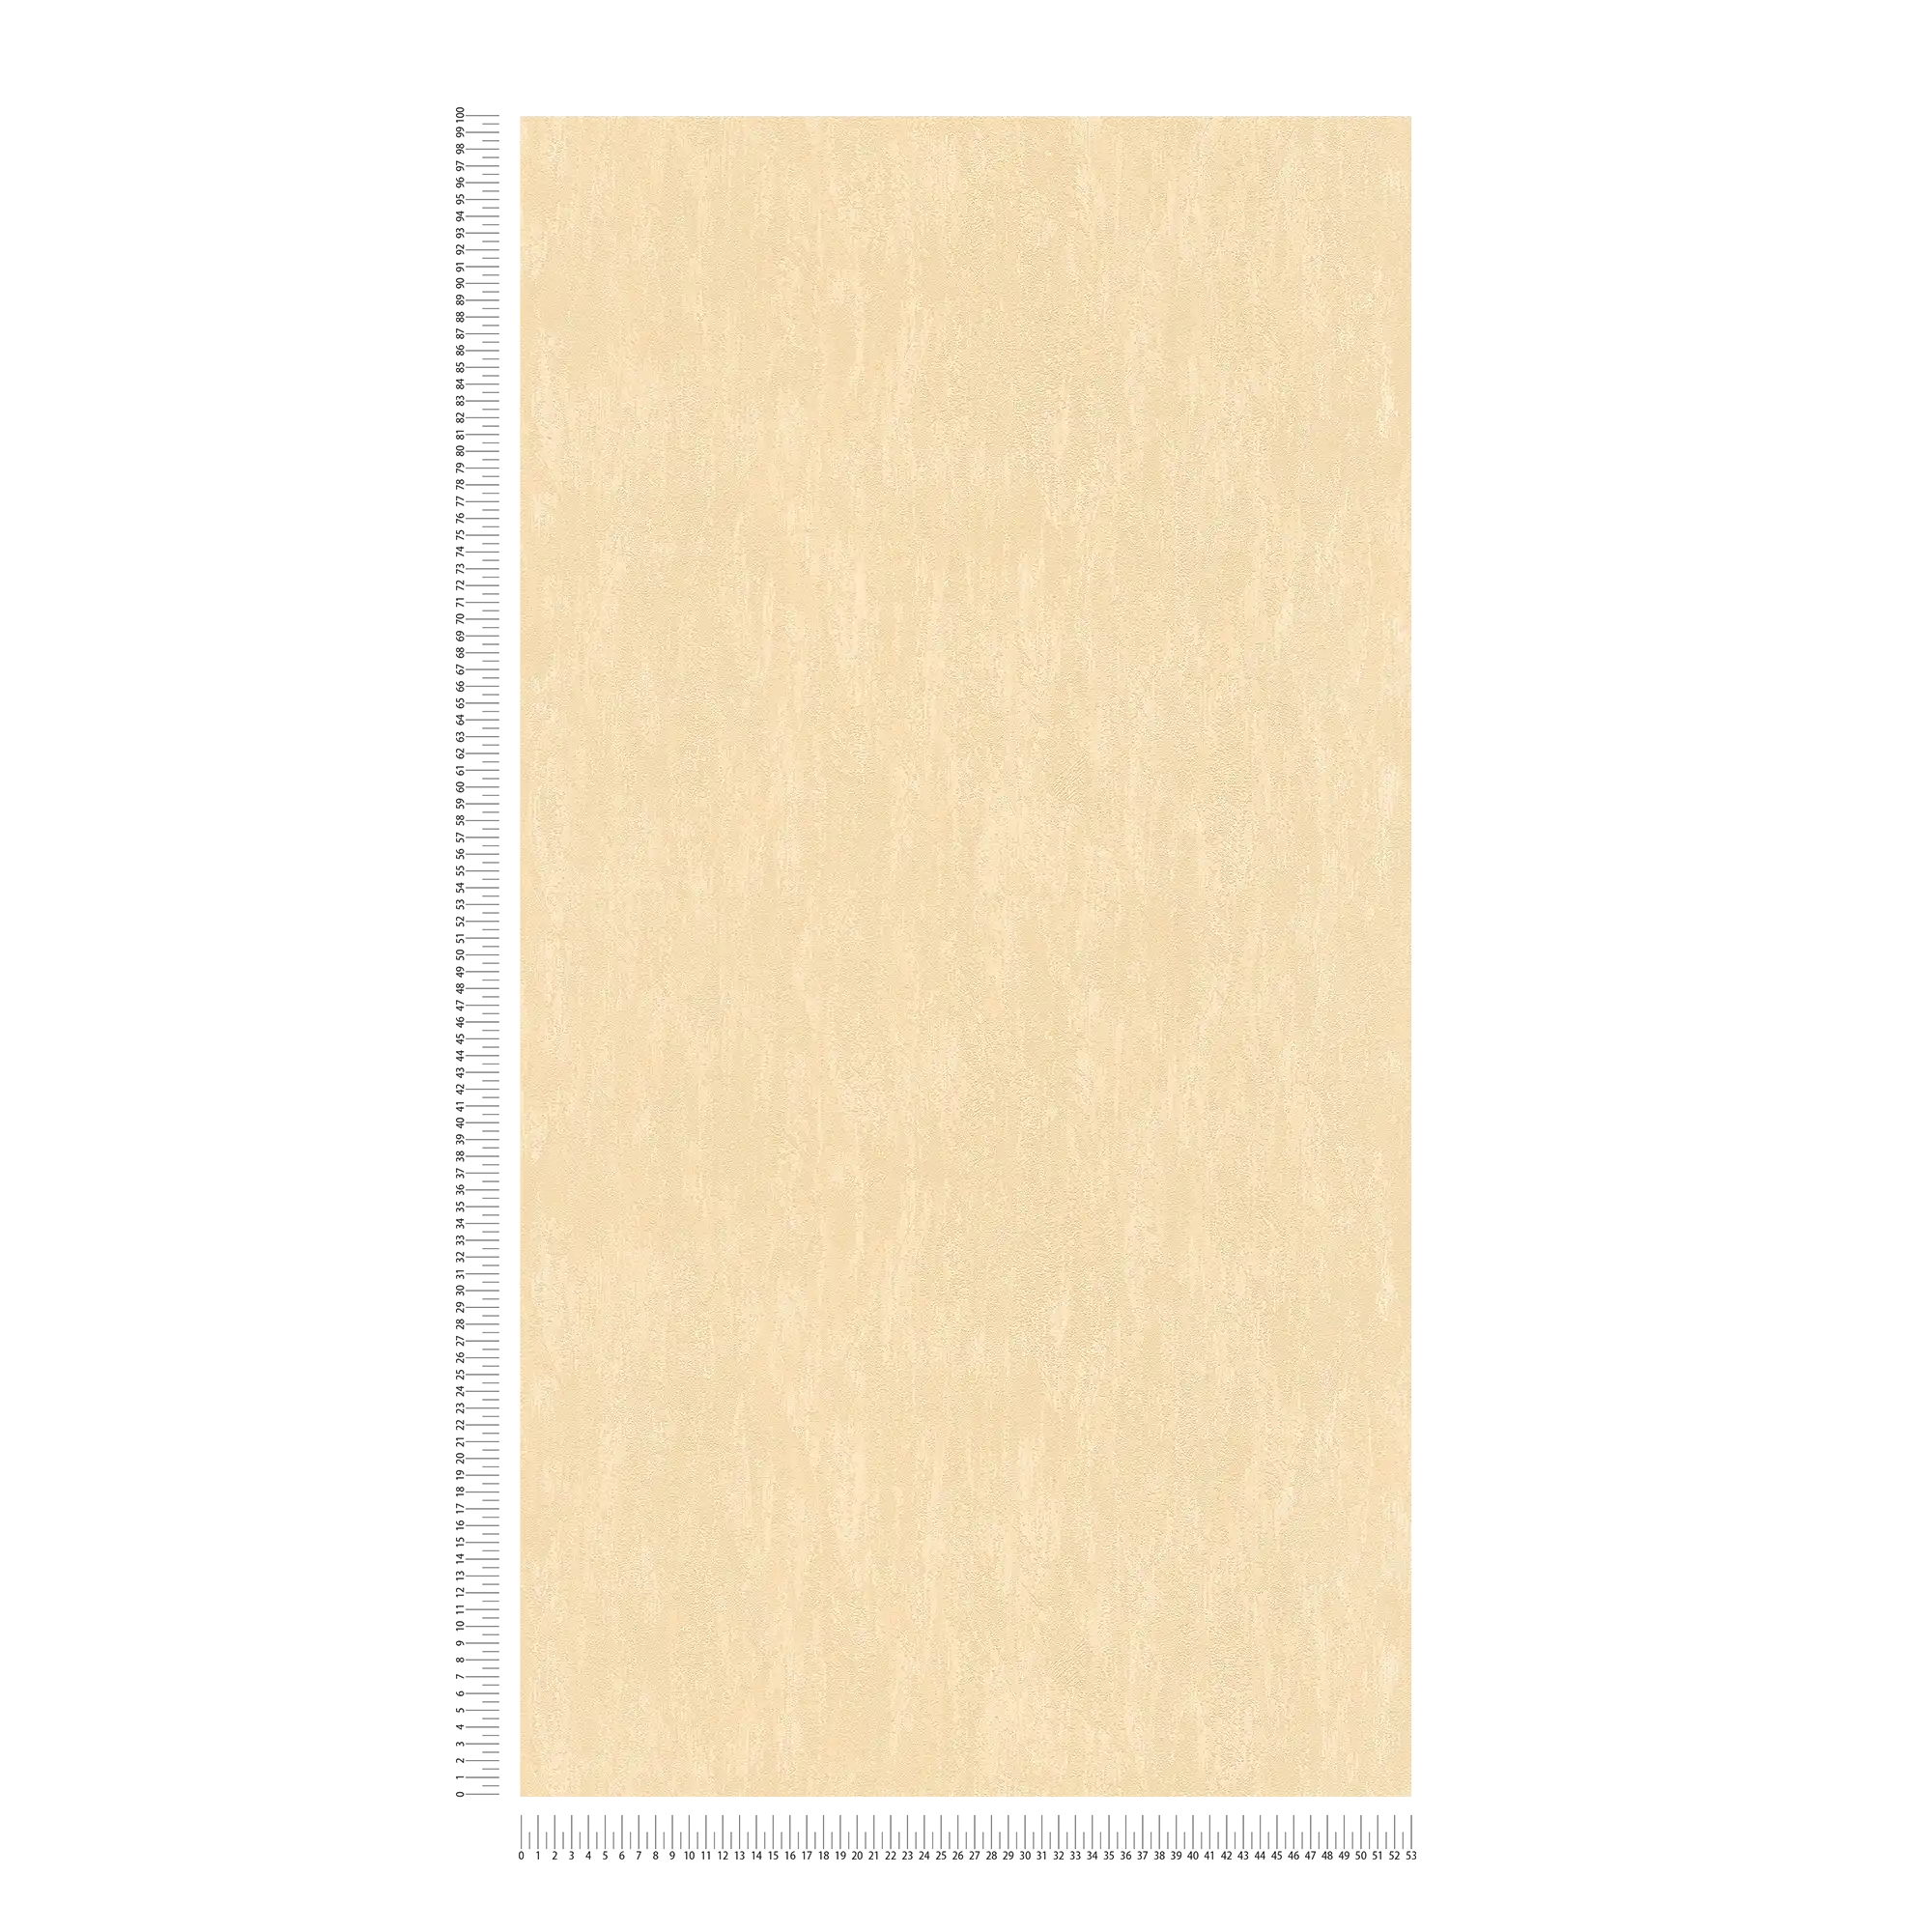             Papier peint uni neutre aspect plâtre - beige
        